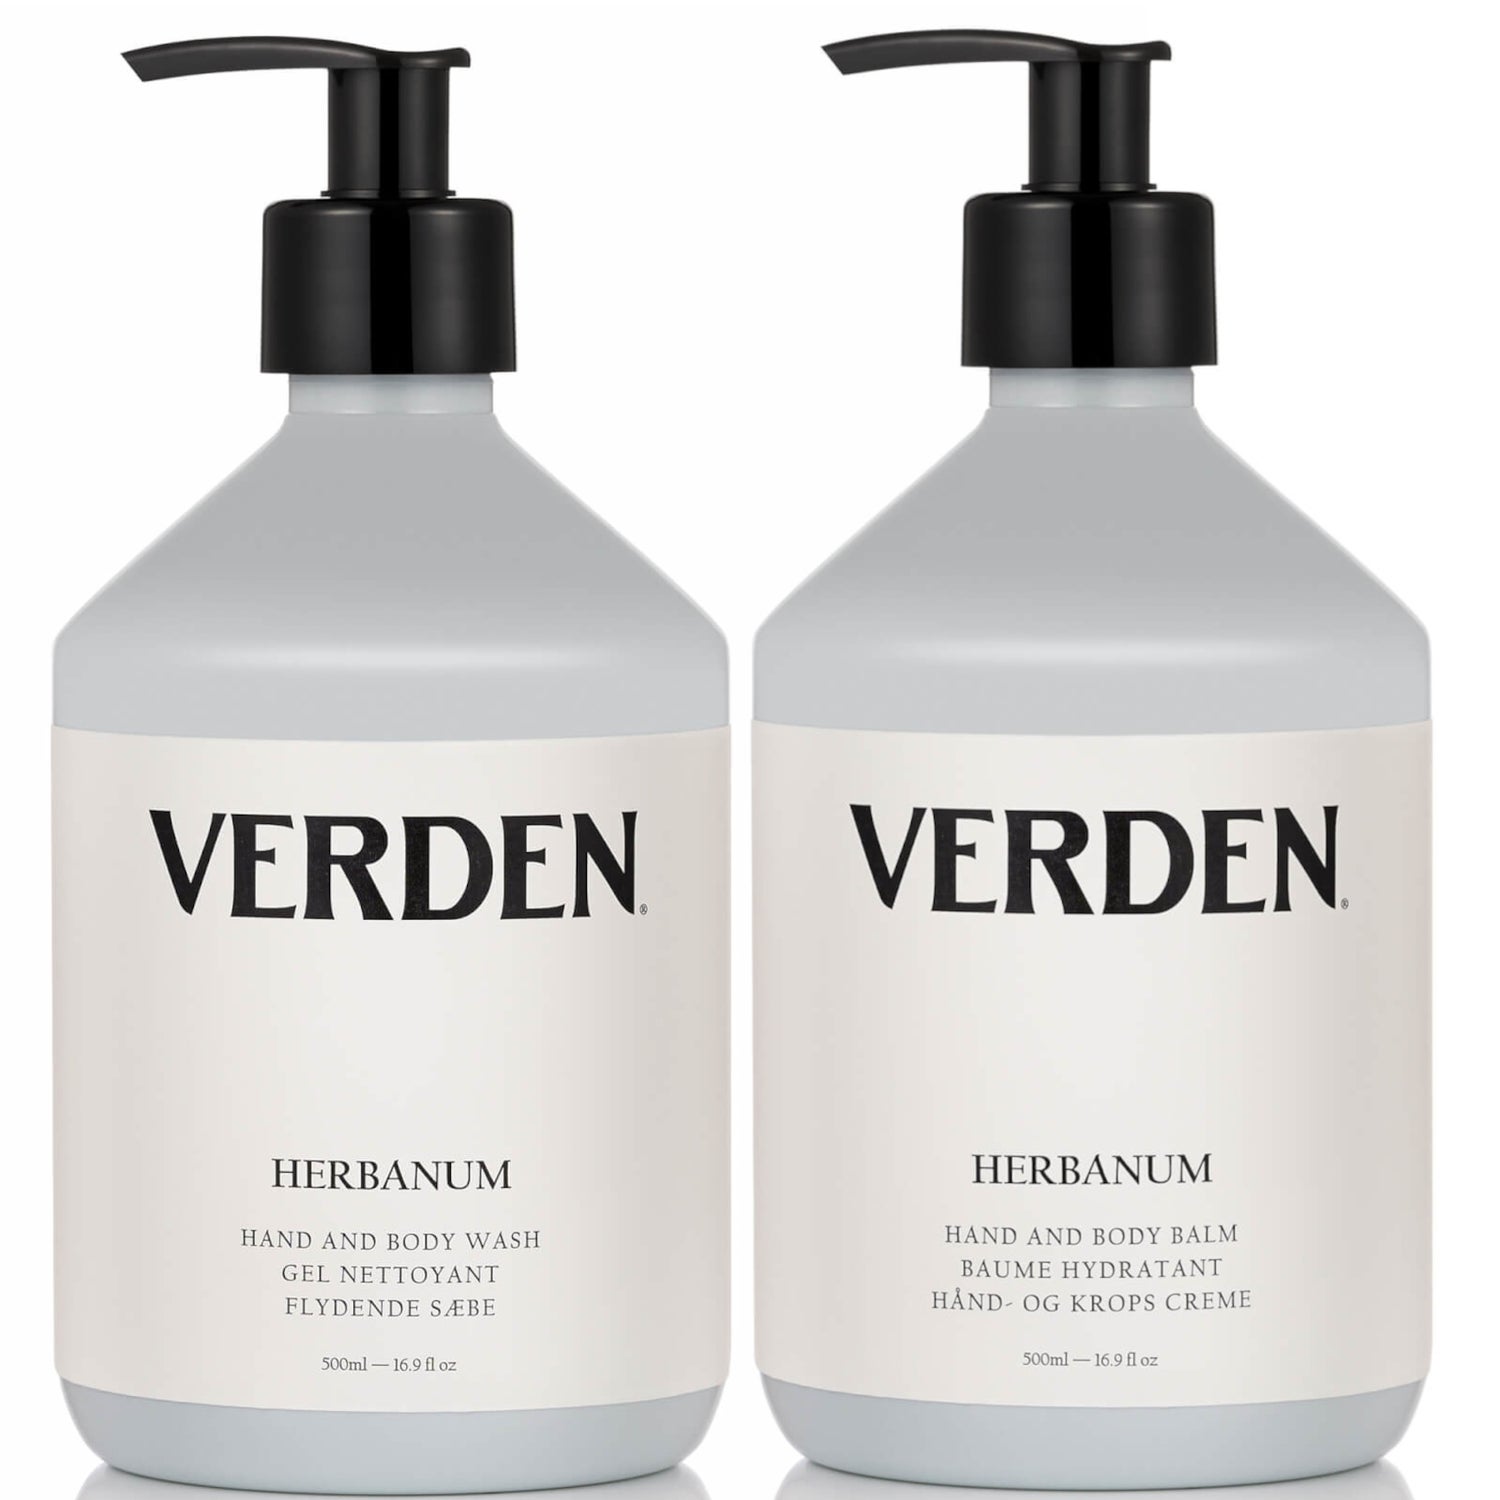 Verden Herbanum Hand Wash & Hand Balm (Worth £105.00)